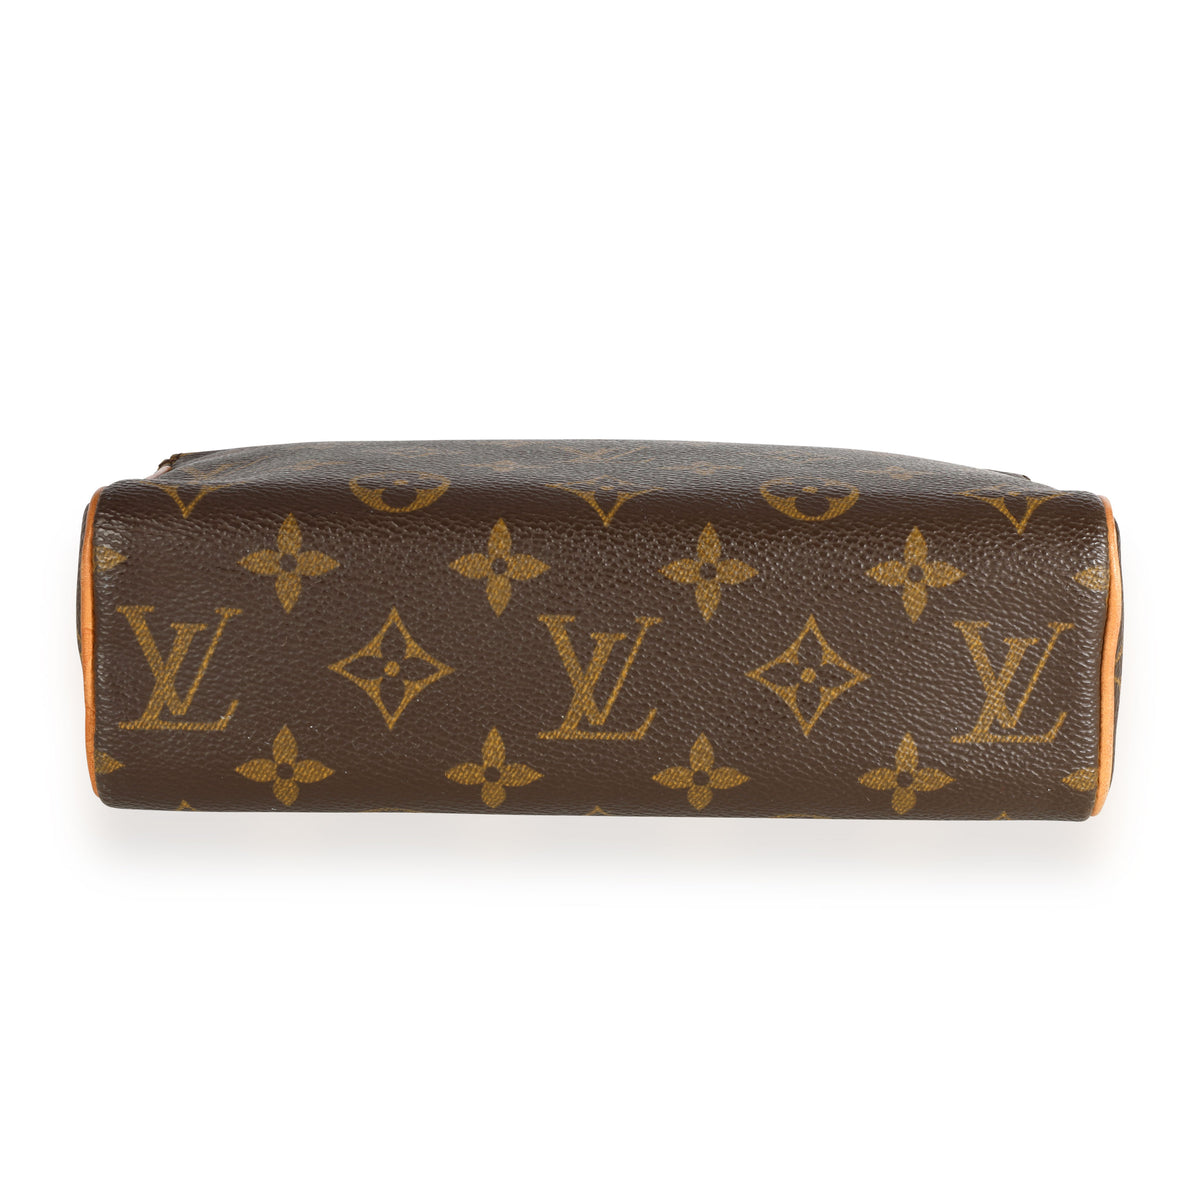 Louis Vuitton, Bags, Authentic Louis Vuitton Monogram Recital Bag